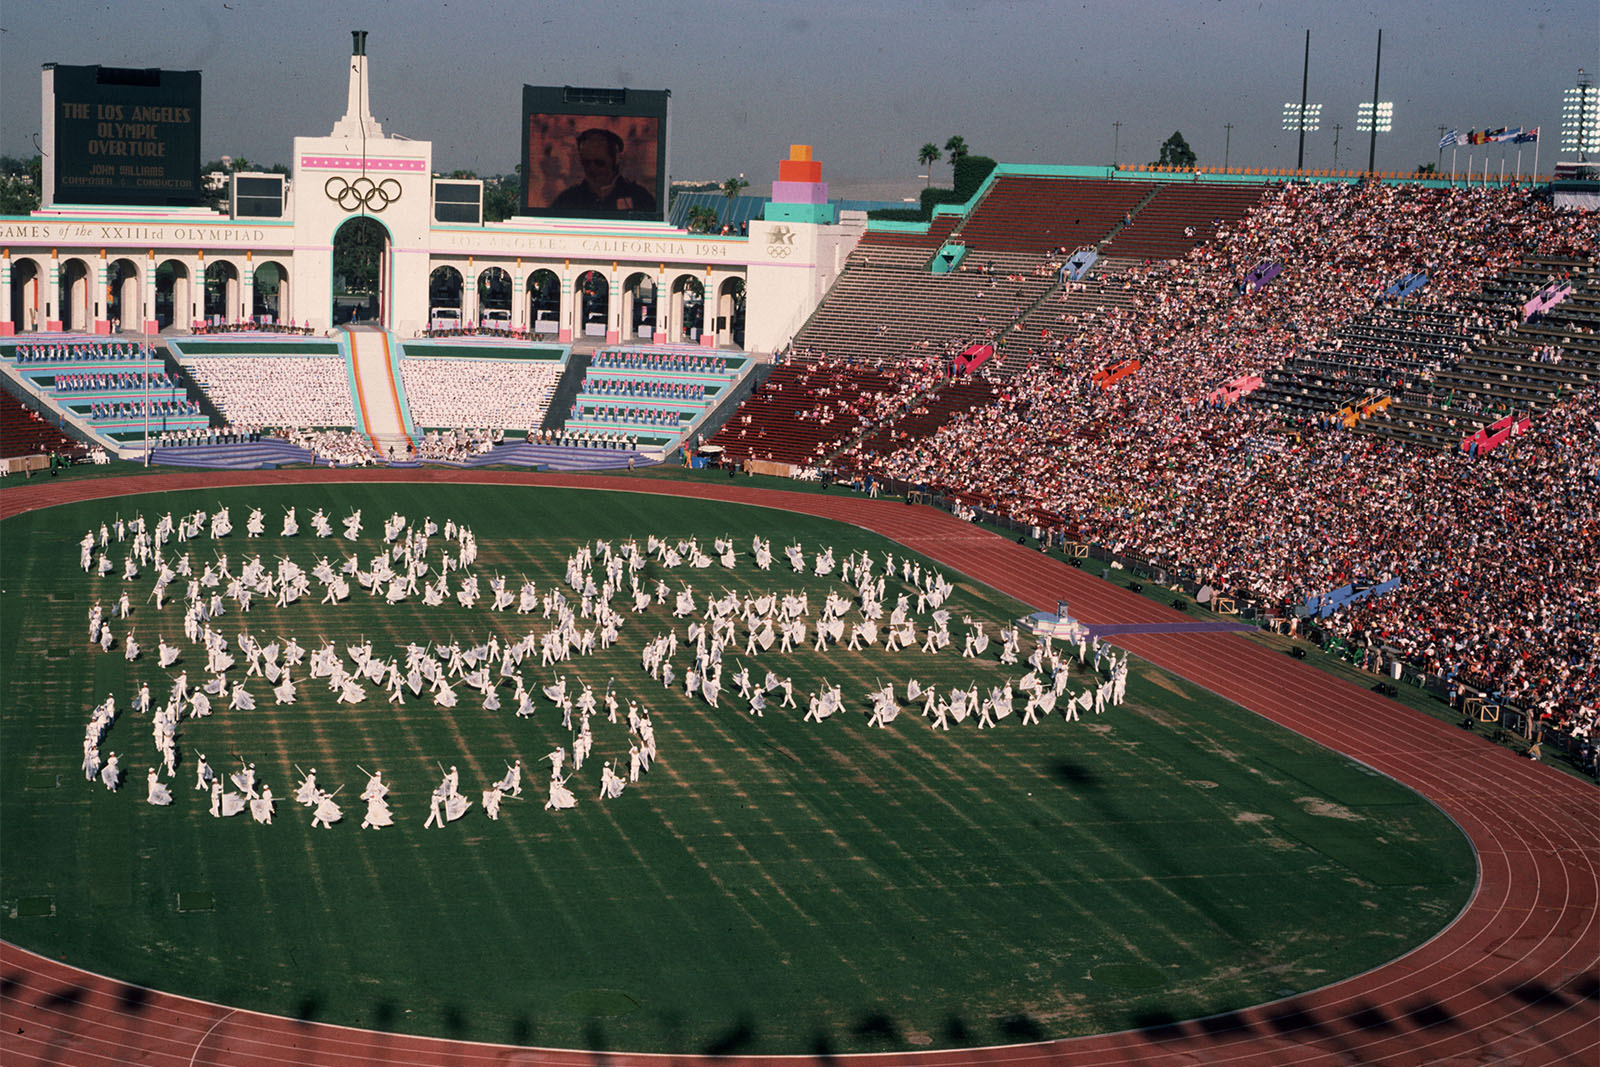 חזרות לטקס הפתיחה של המשחקים האולימפיים בלוס אנג'לס, ארה"ב 1984 (Photo by Hulton Archive/Getty Images)